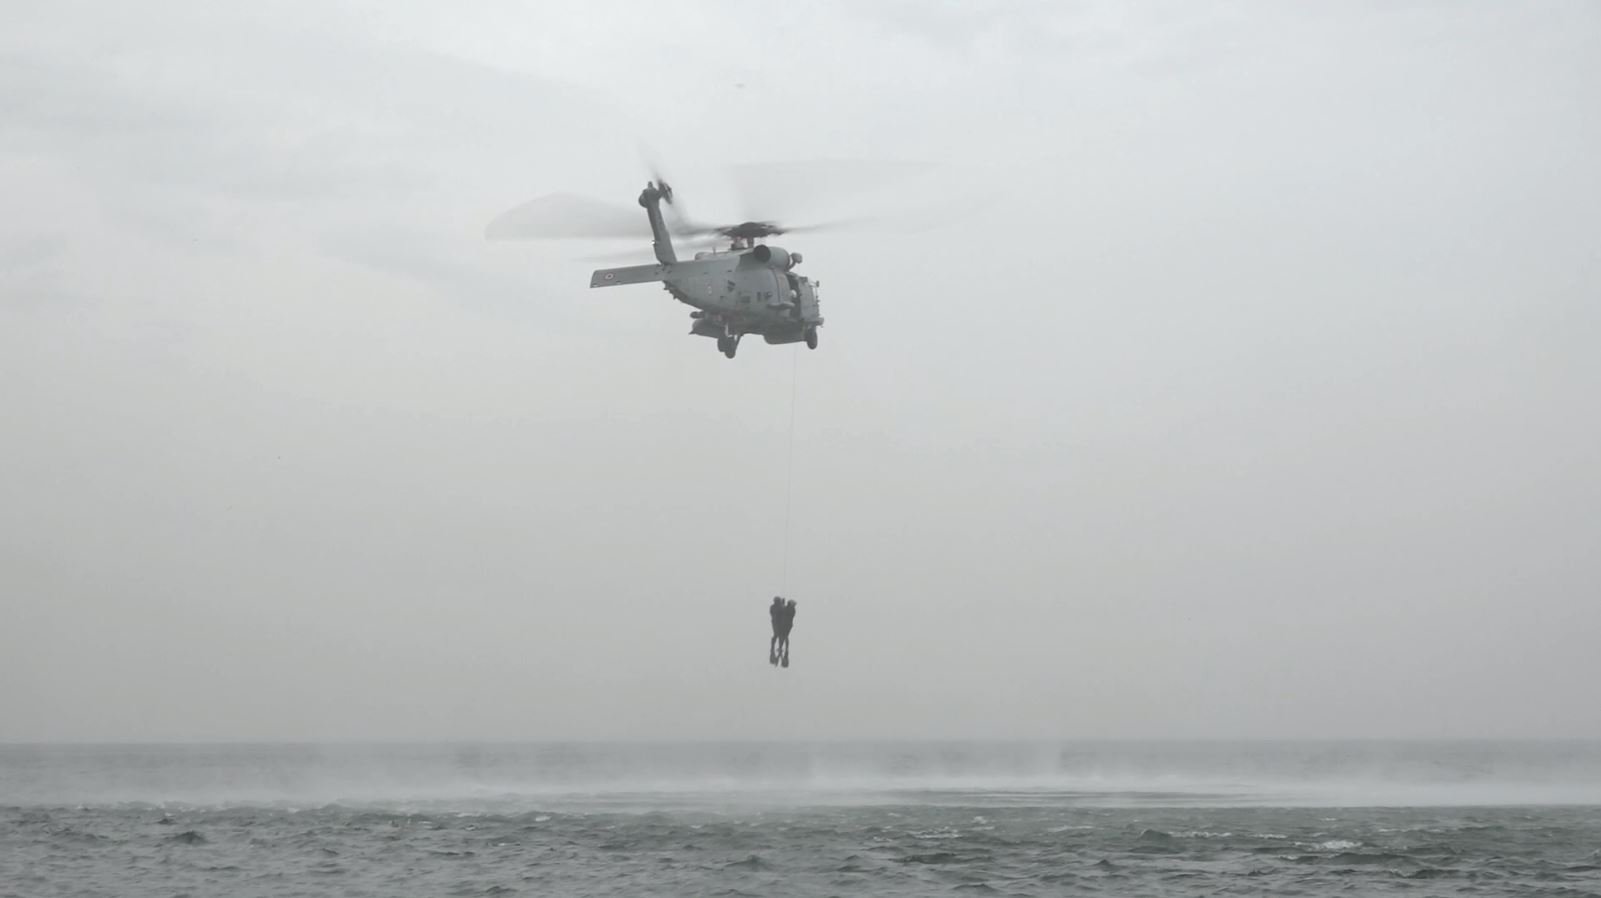 Helikopter militer Turki terlihat di atas kapal selama upaya pemindahan ranjau, 3 April 2022 (Foto DHA)